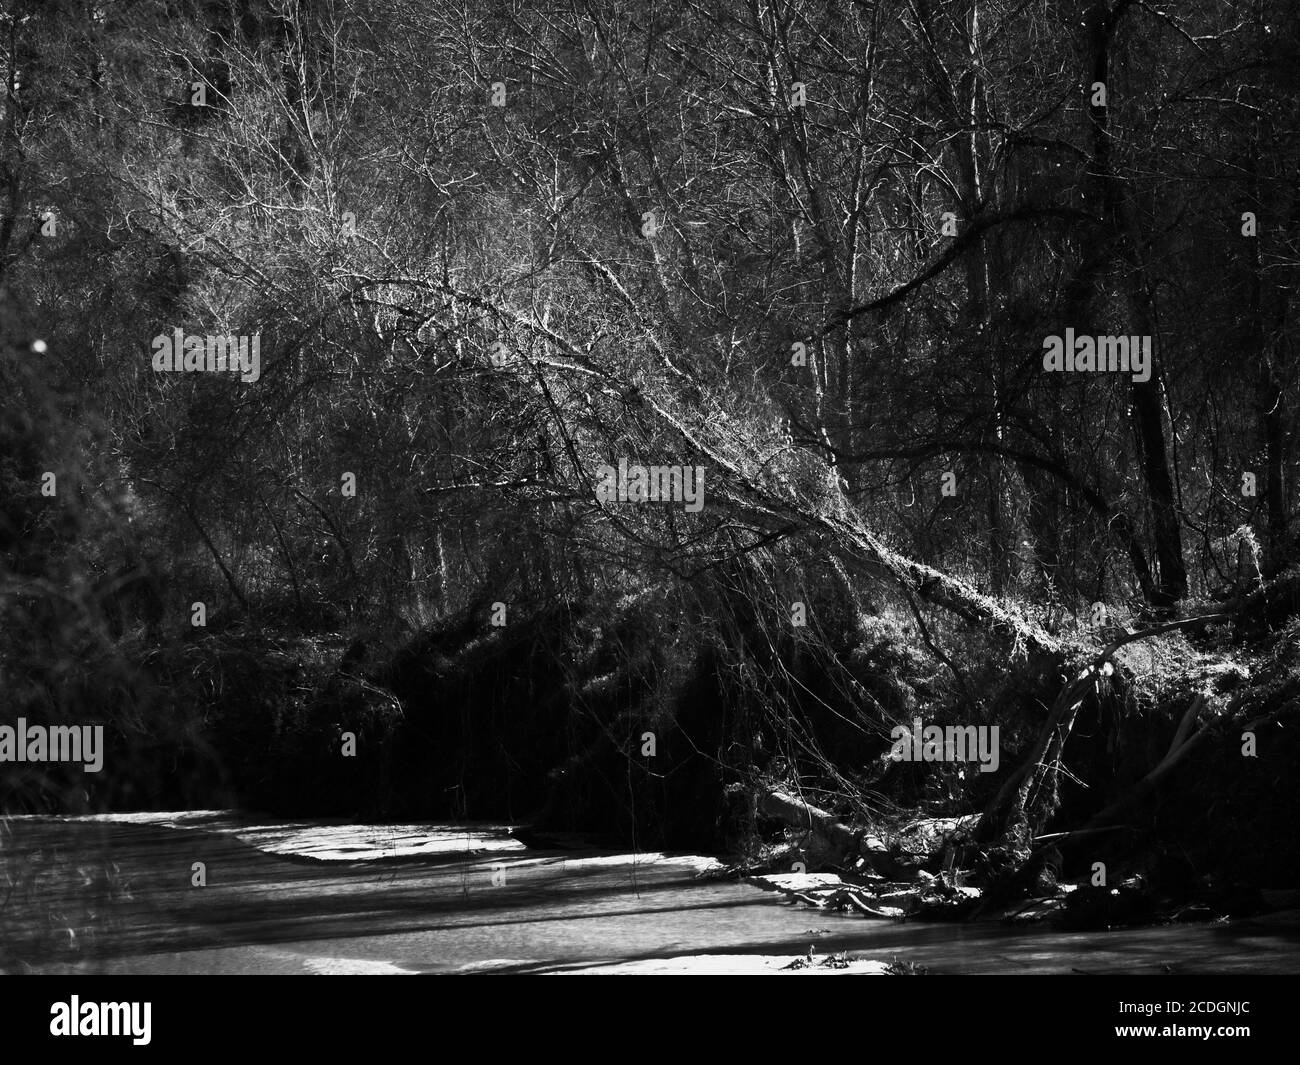 The Woodlands TX USA - 01-20-2020 - Tree Over Creek En noir et blanc Banque D'Images